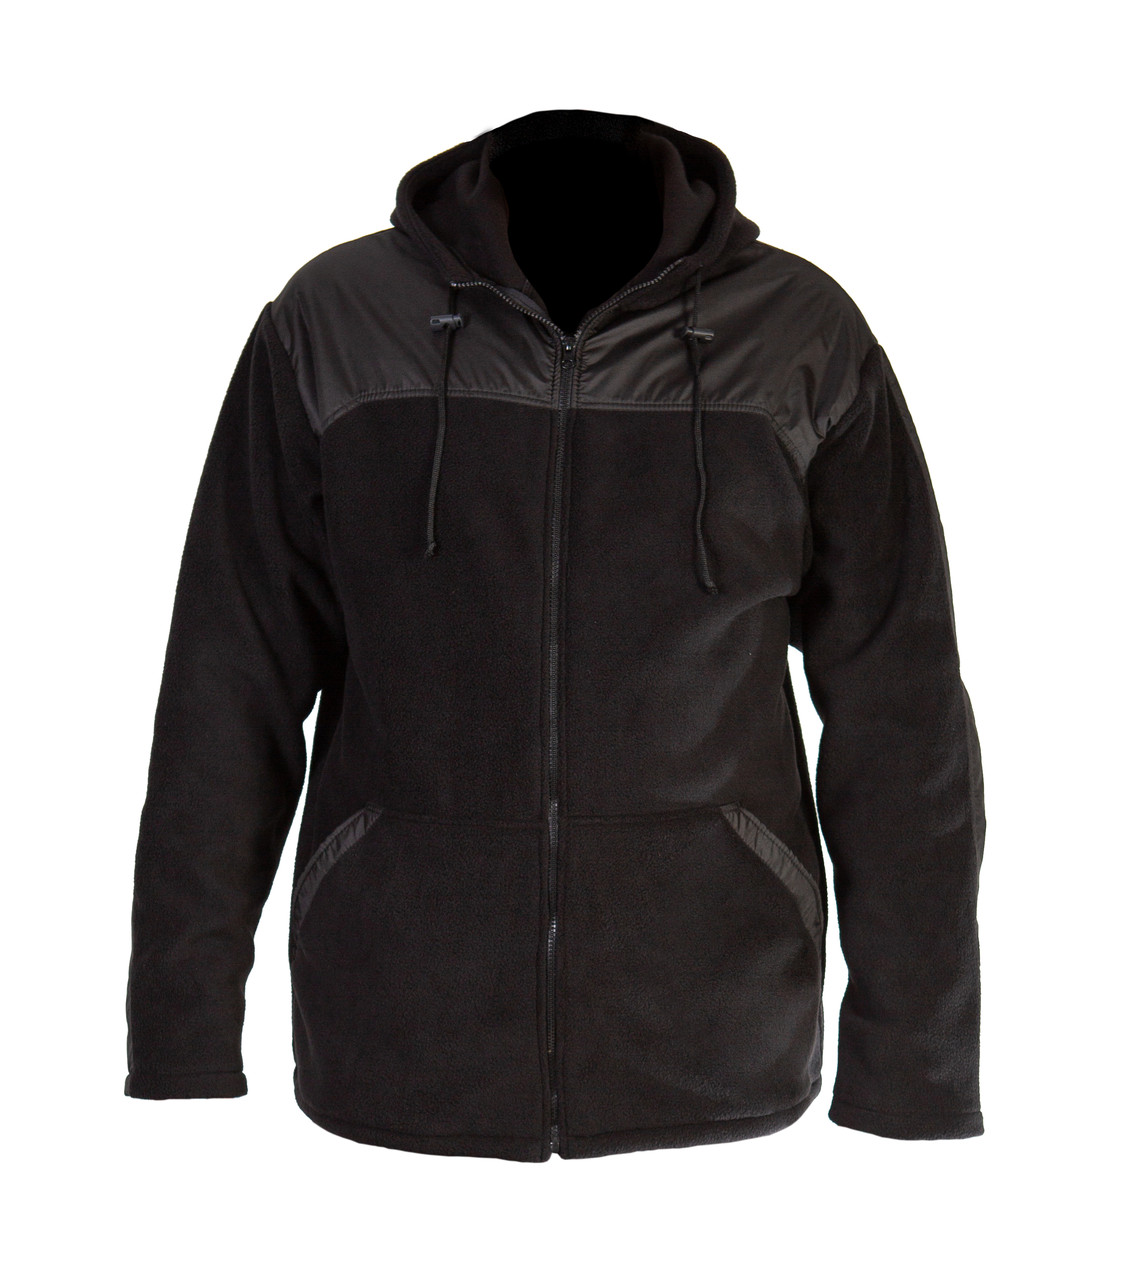 Куртка из флиса на молнии, размер XL, цвет черный